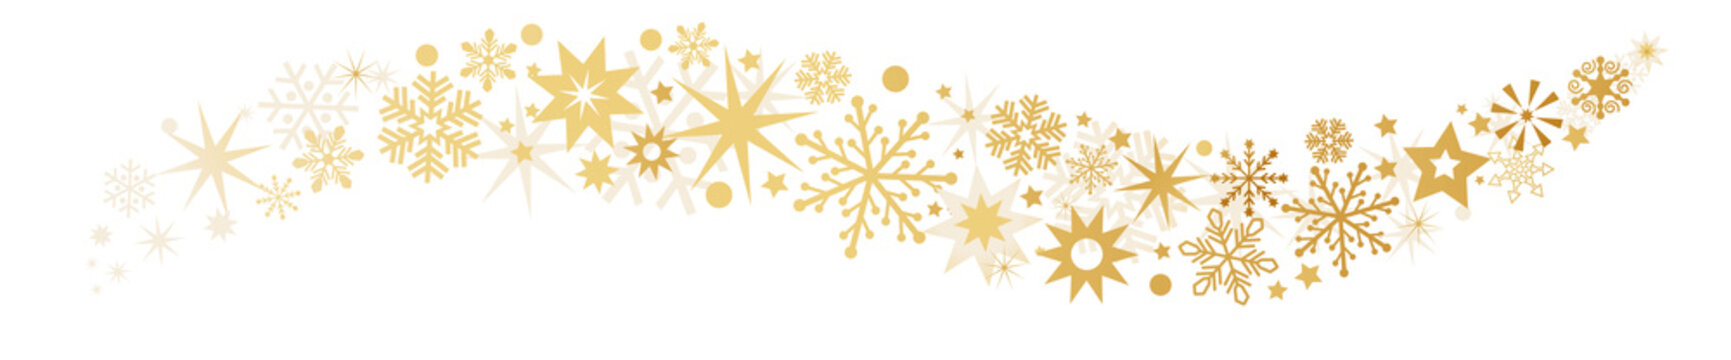 Weihnachten und goldene Sterne auf weißem Hintergrund - Sternenbanner Vektor Illustration